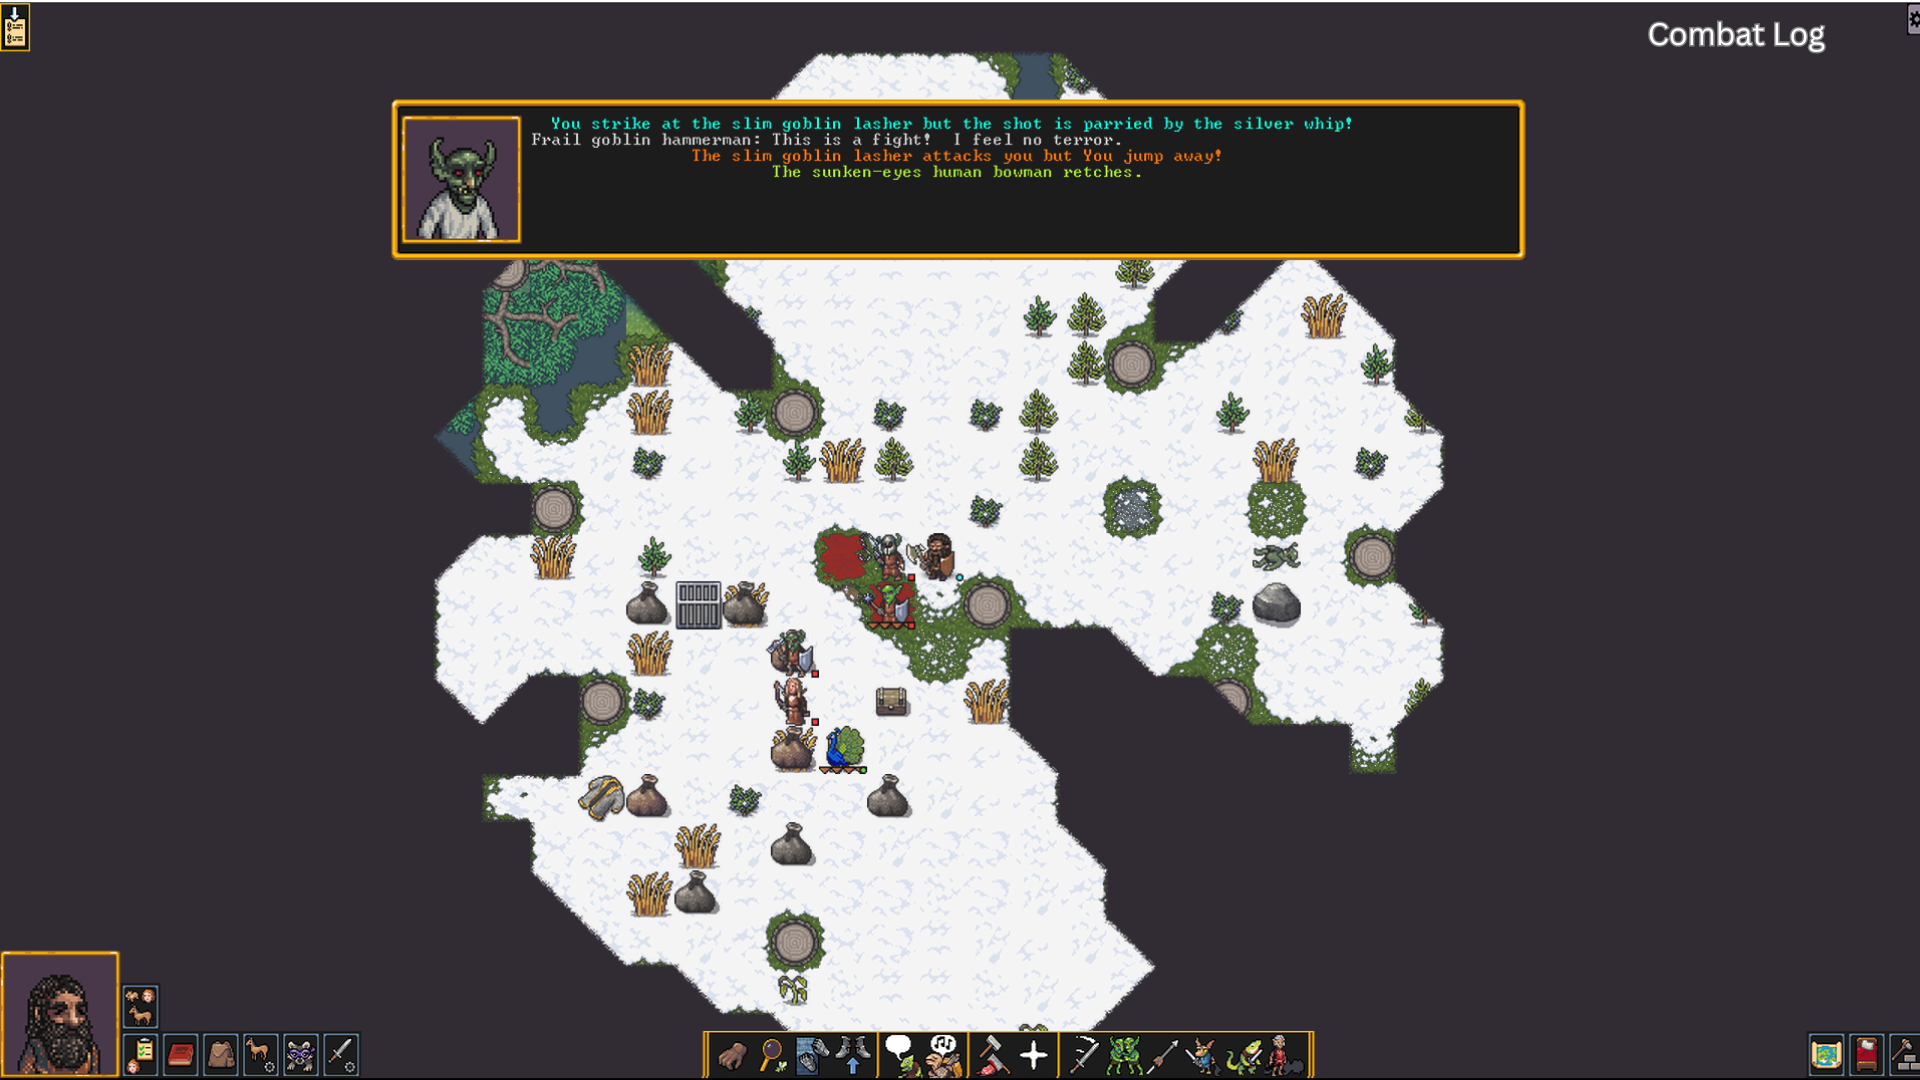 Режим приключений Dwarf Fortress привносит хаотичный дух сима в CRPG